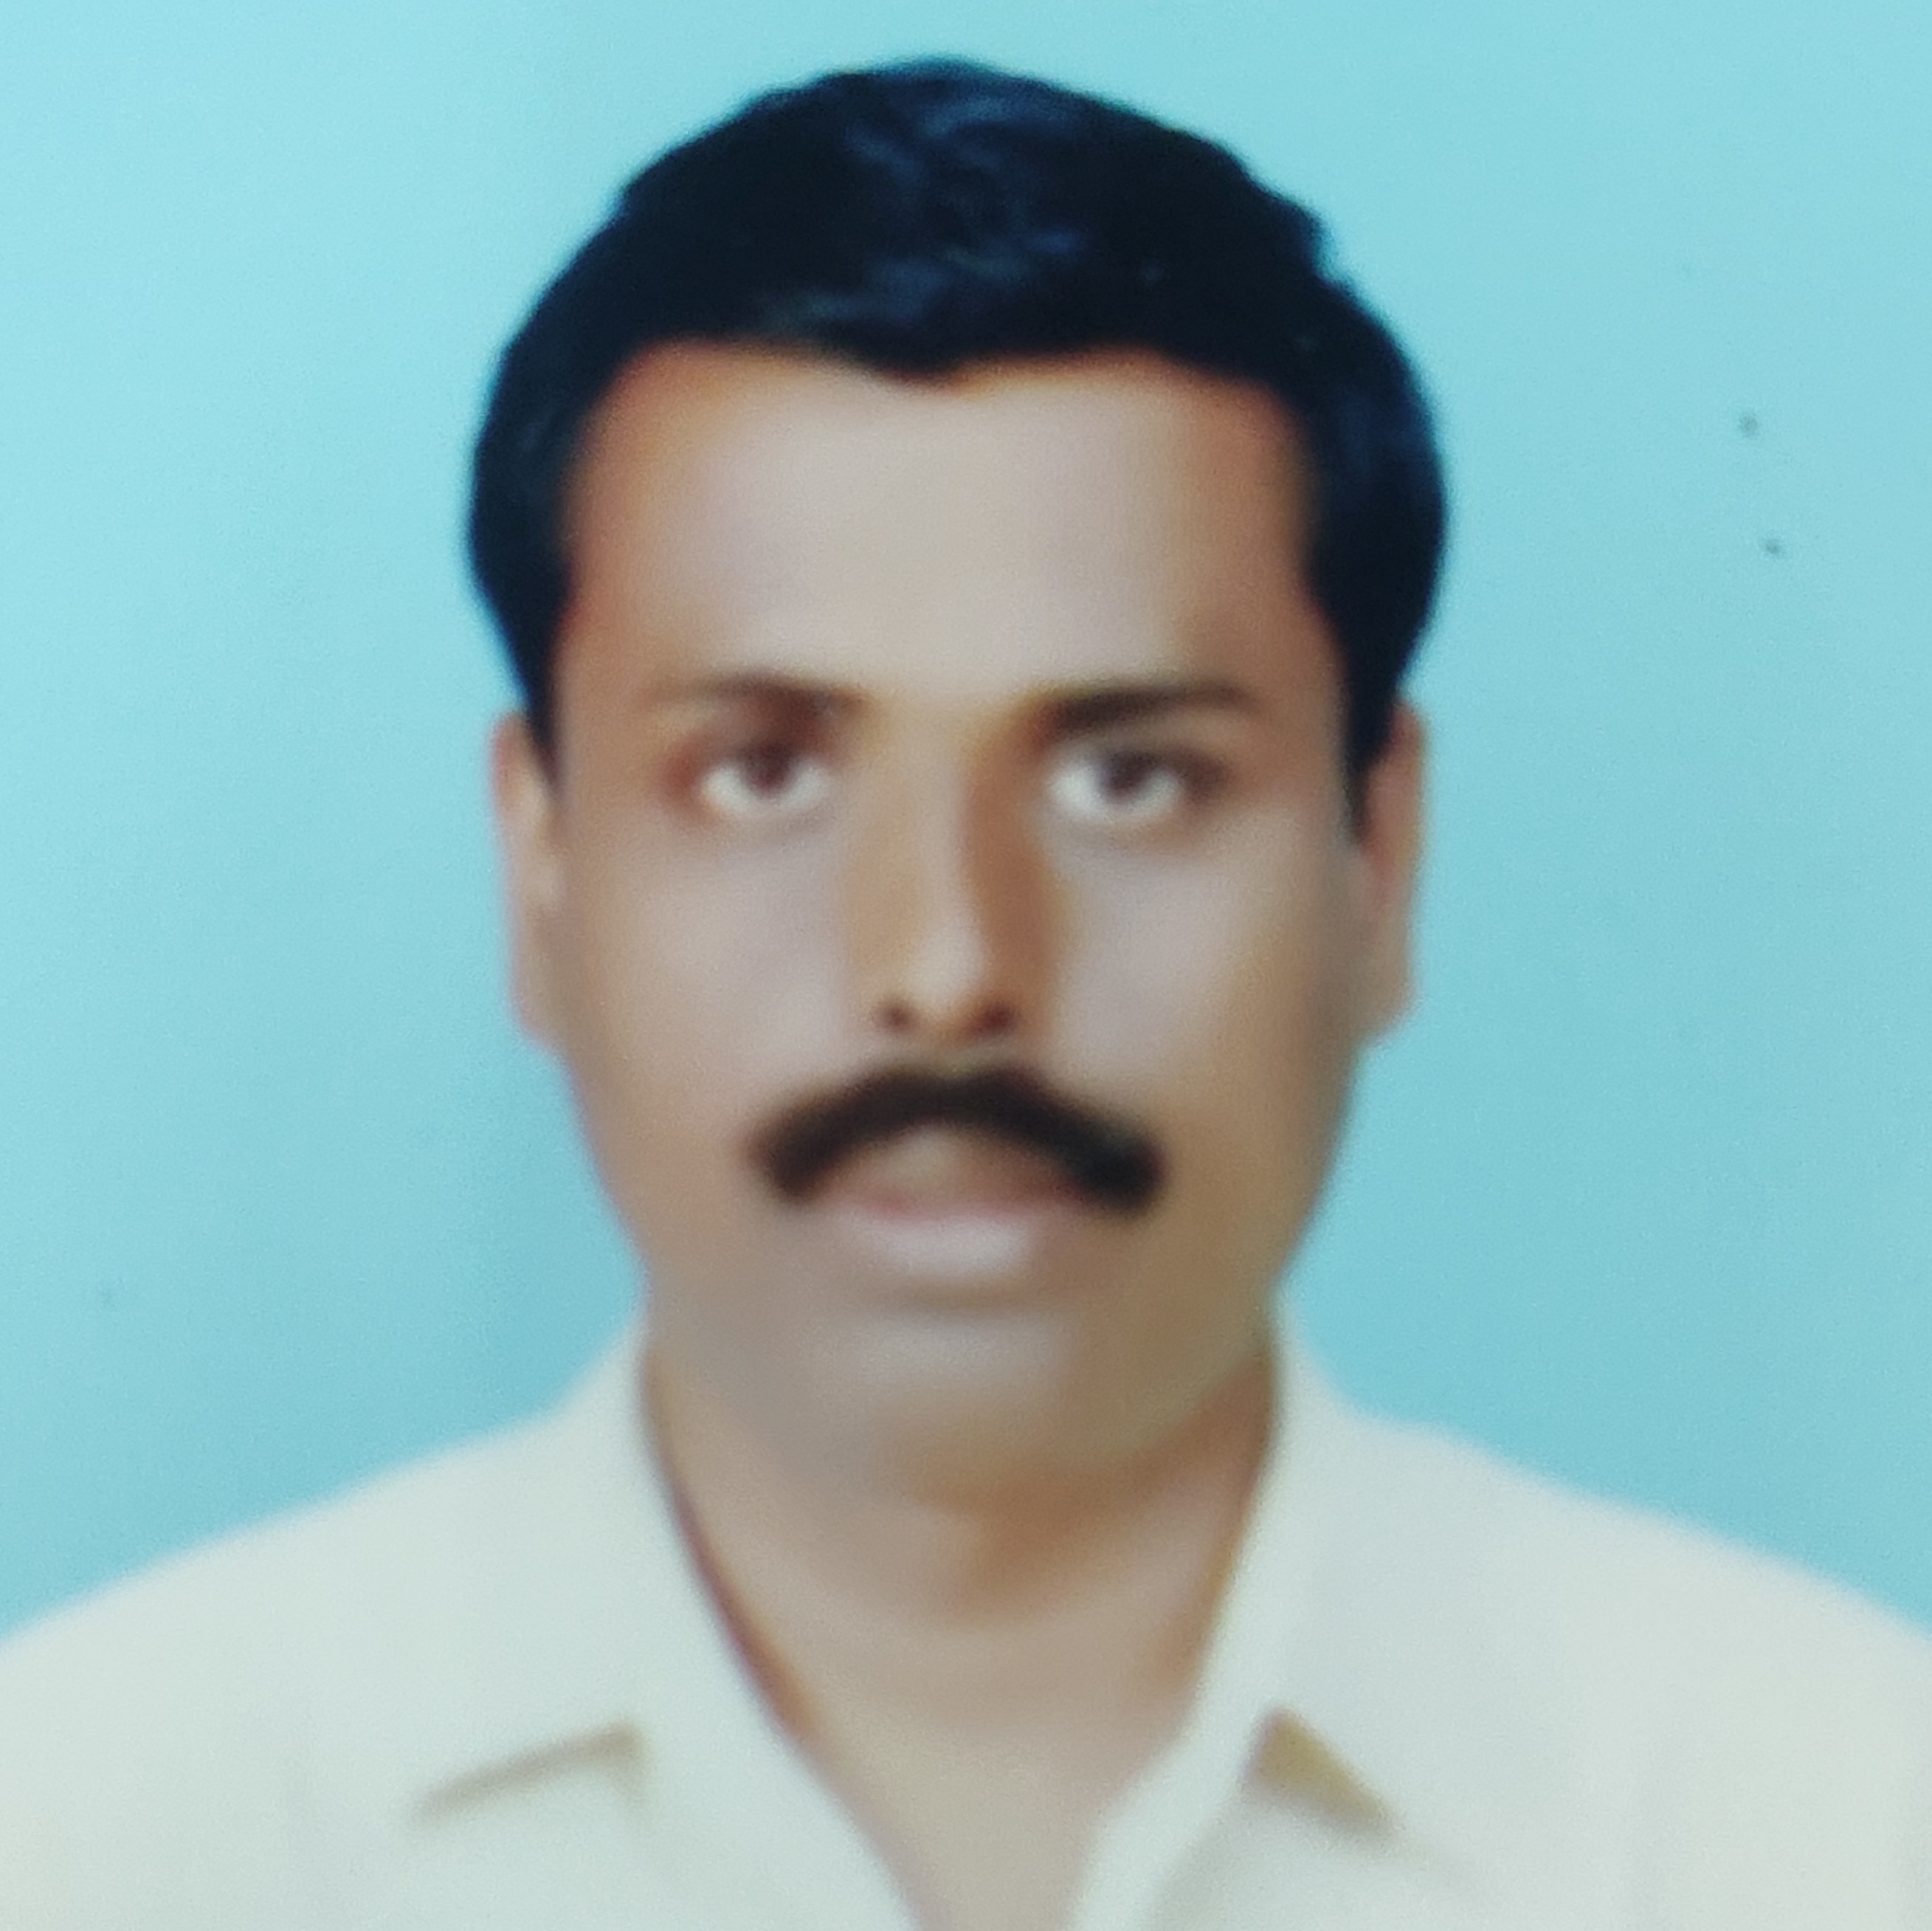 Mr. G. Selvasekar